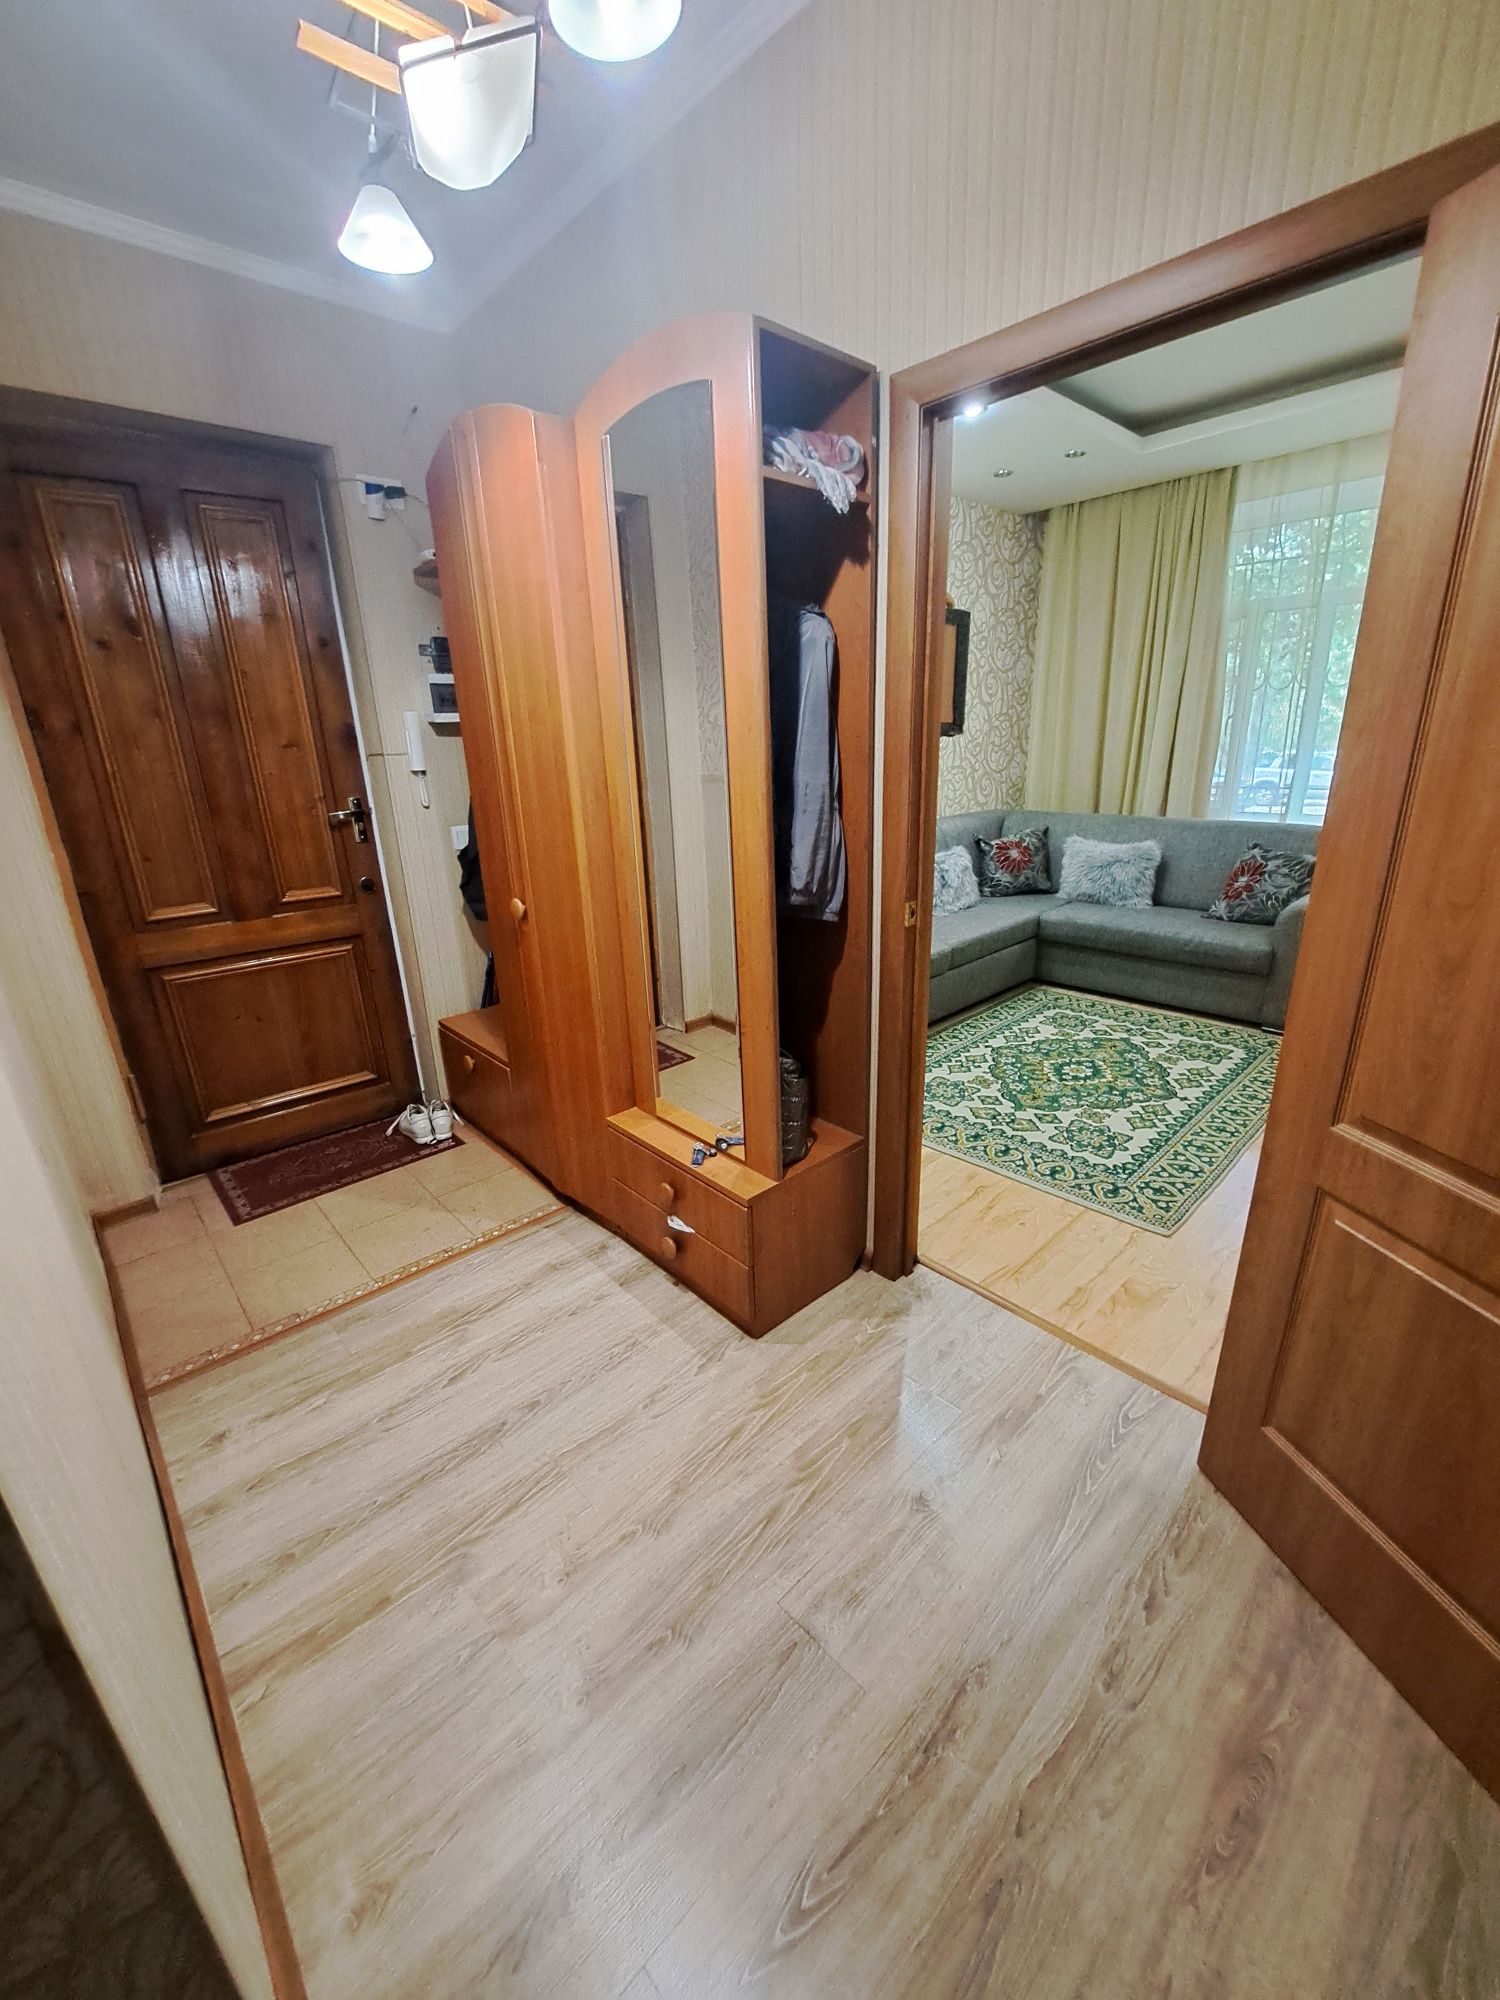 Продаём трехкомнатную квартиру болгарского типа в Восточной части